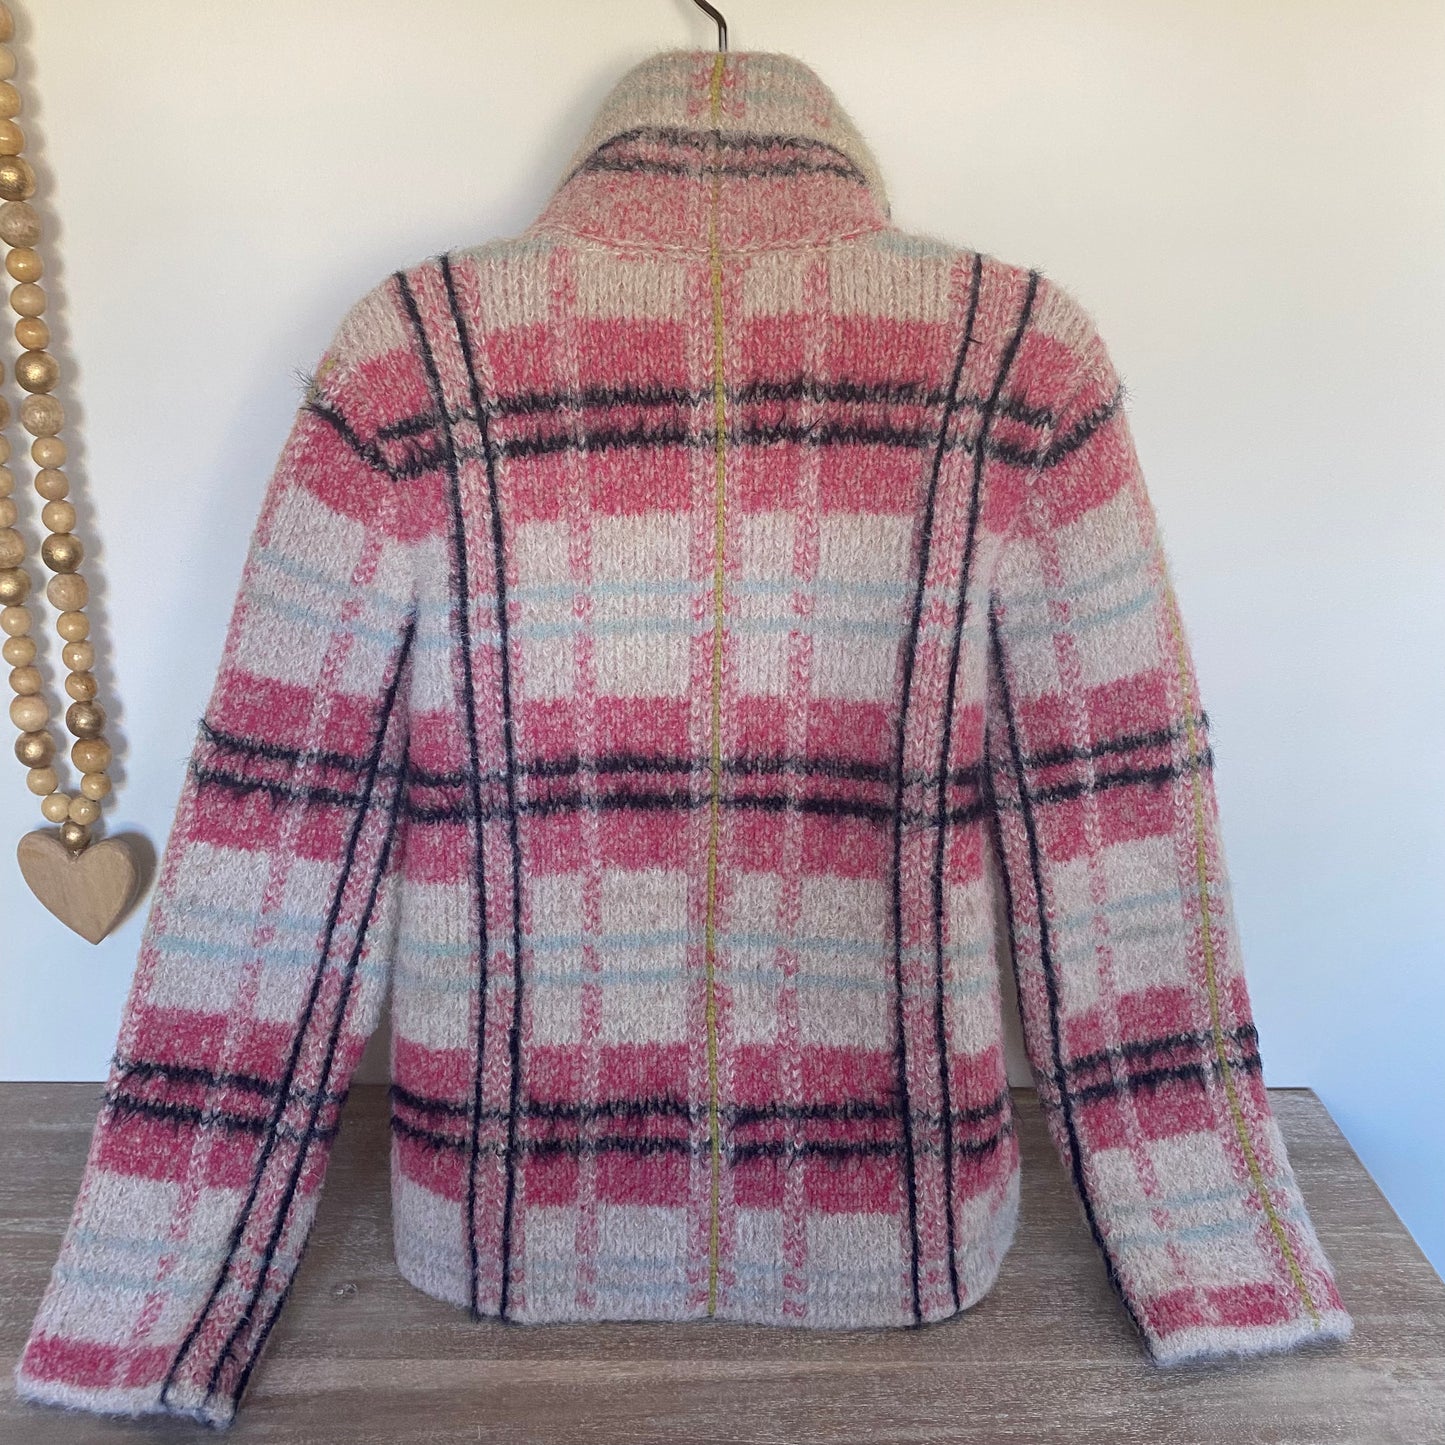 Anthropologie Maeve Aurelia Plaid Fuzzy Sweater Blazer Jacket Size S